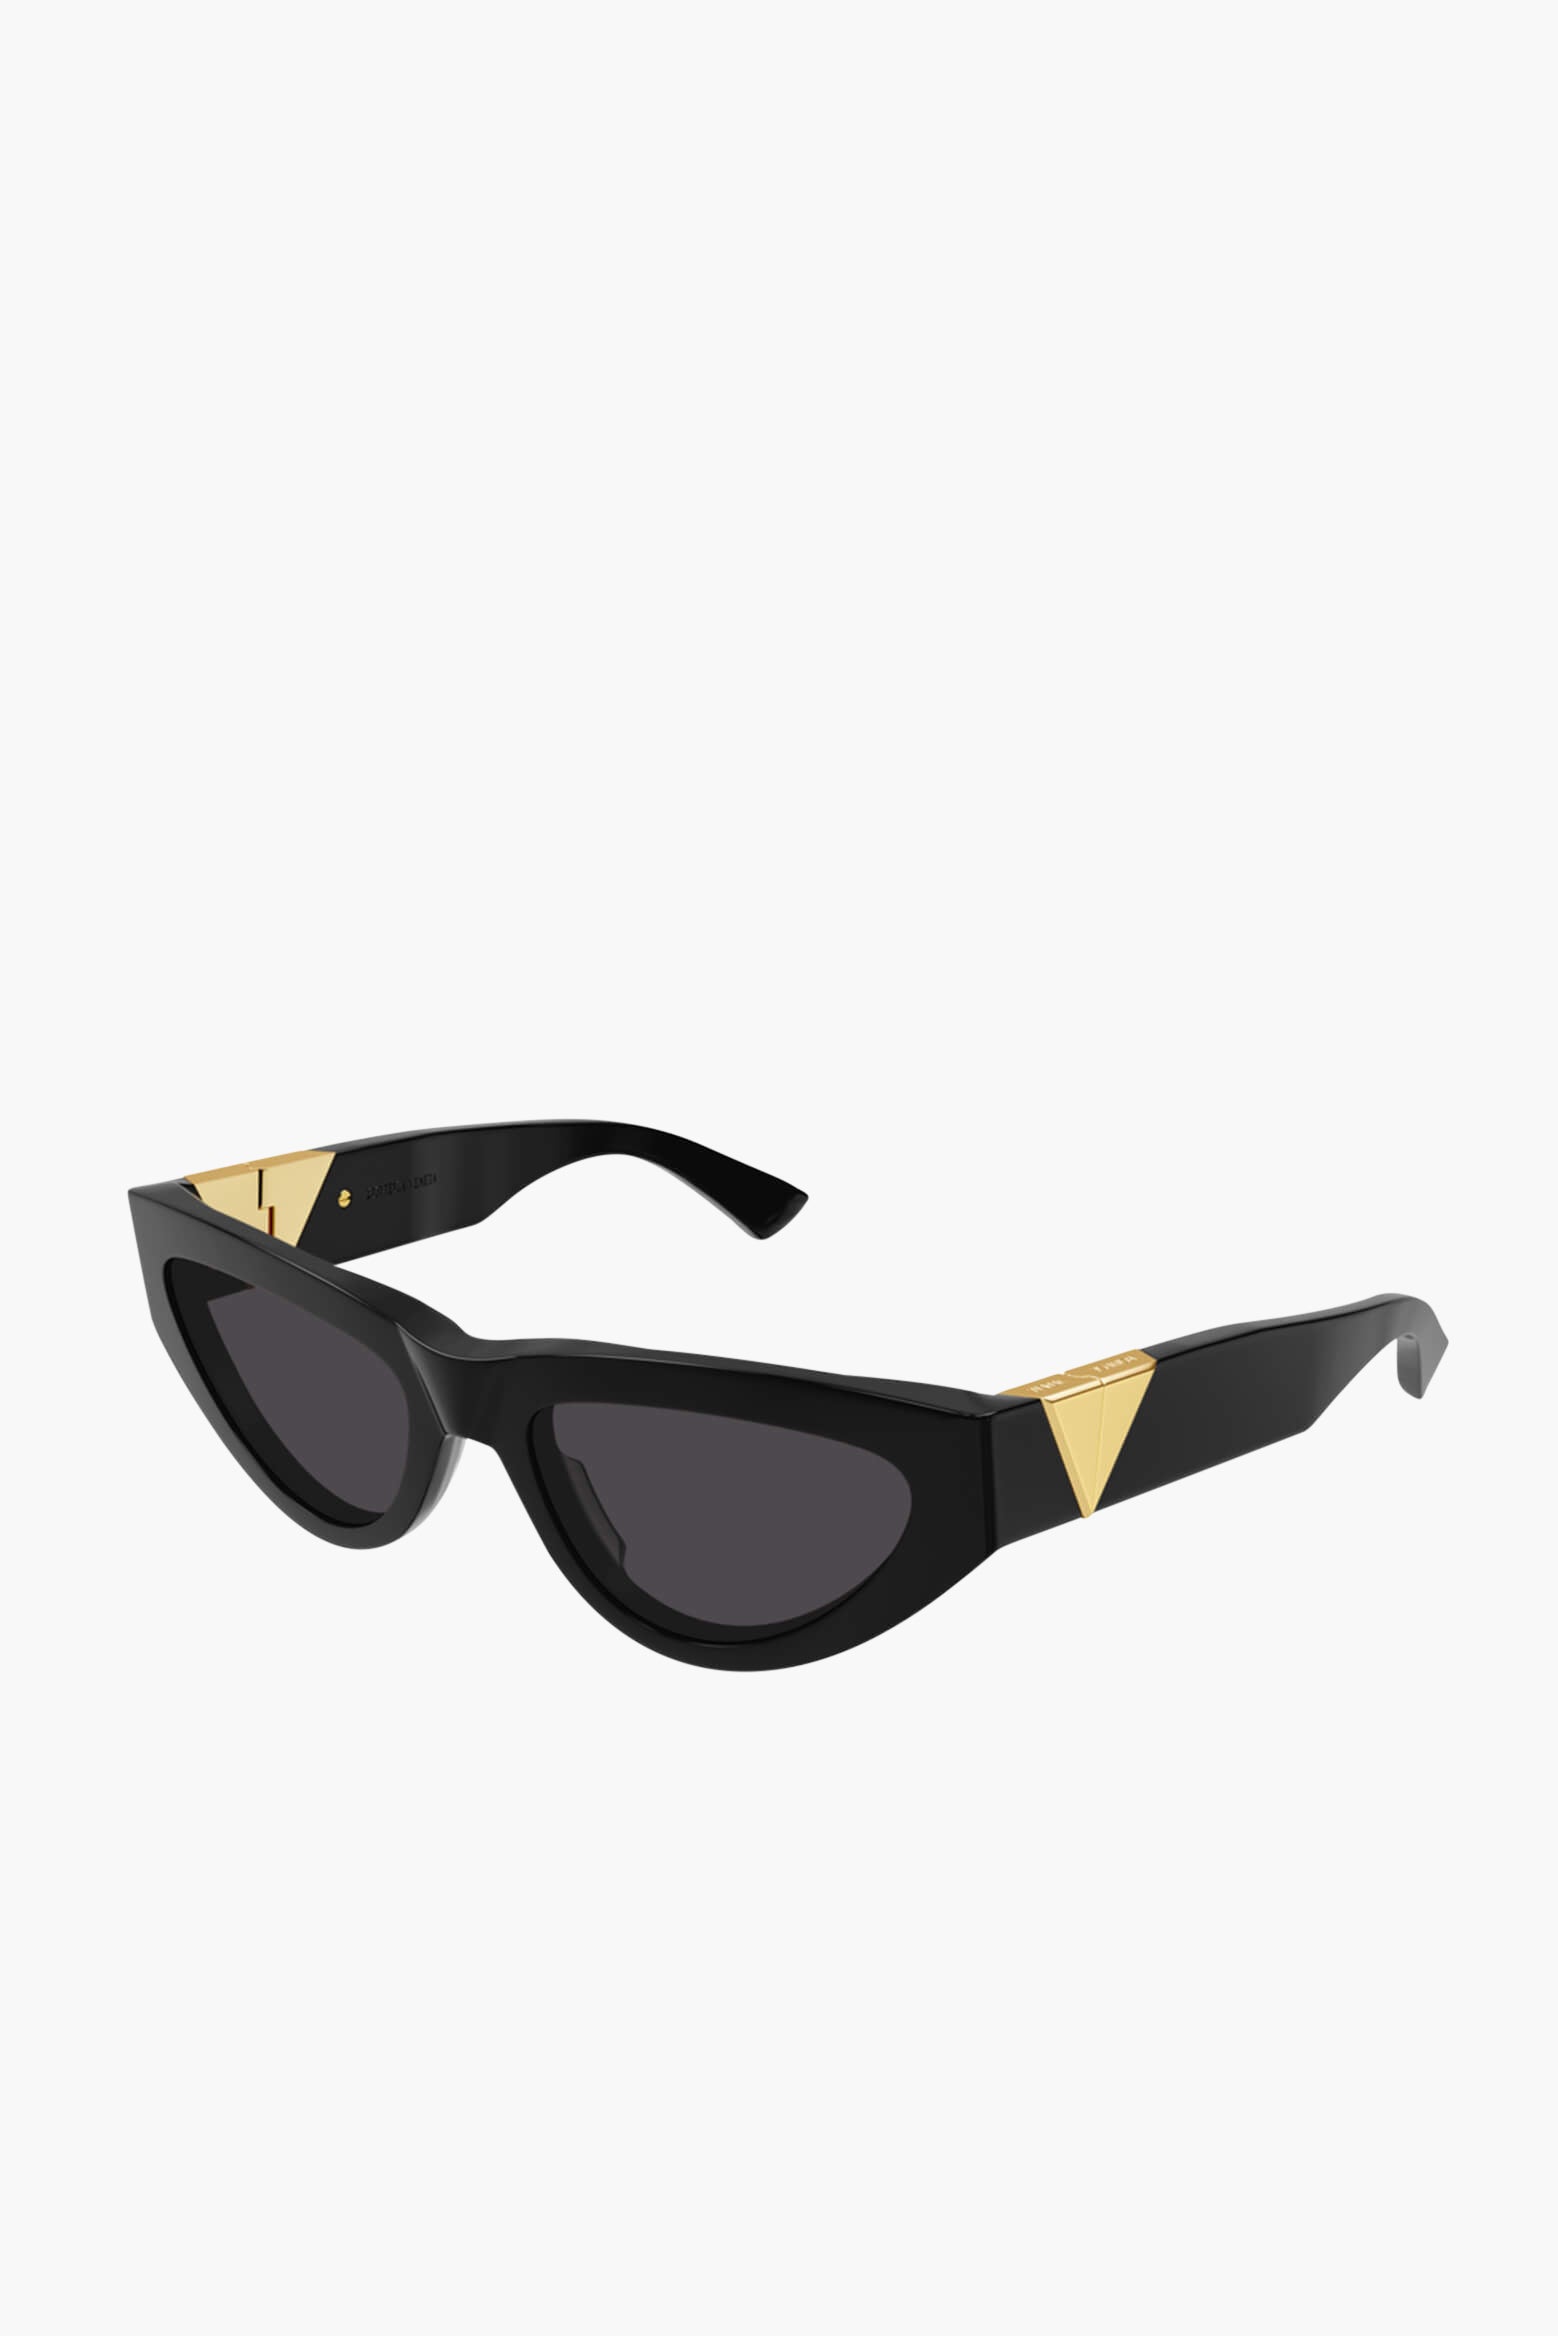 Bottega Veneta Cat Eye Frame Sunglasses in Black available at The New Trend